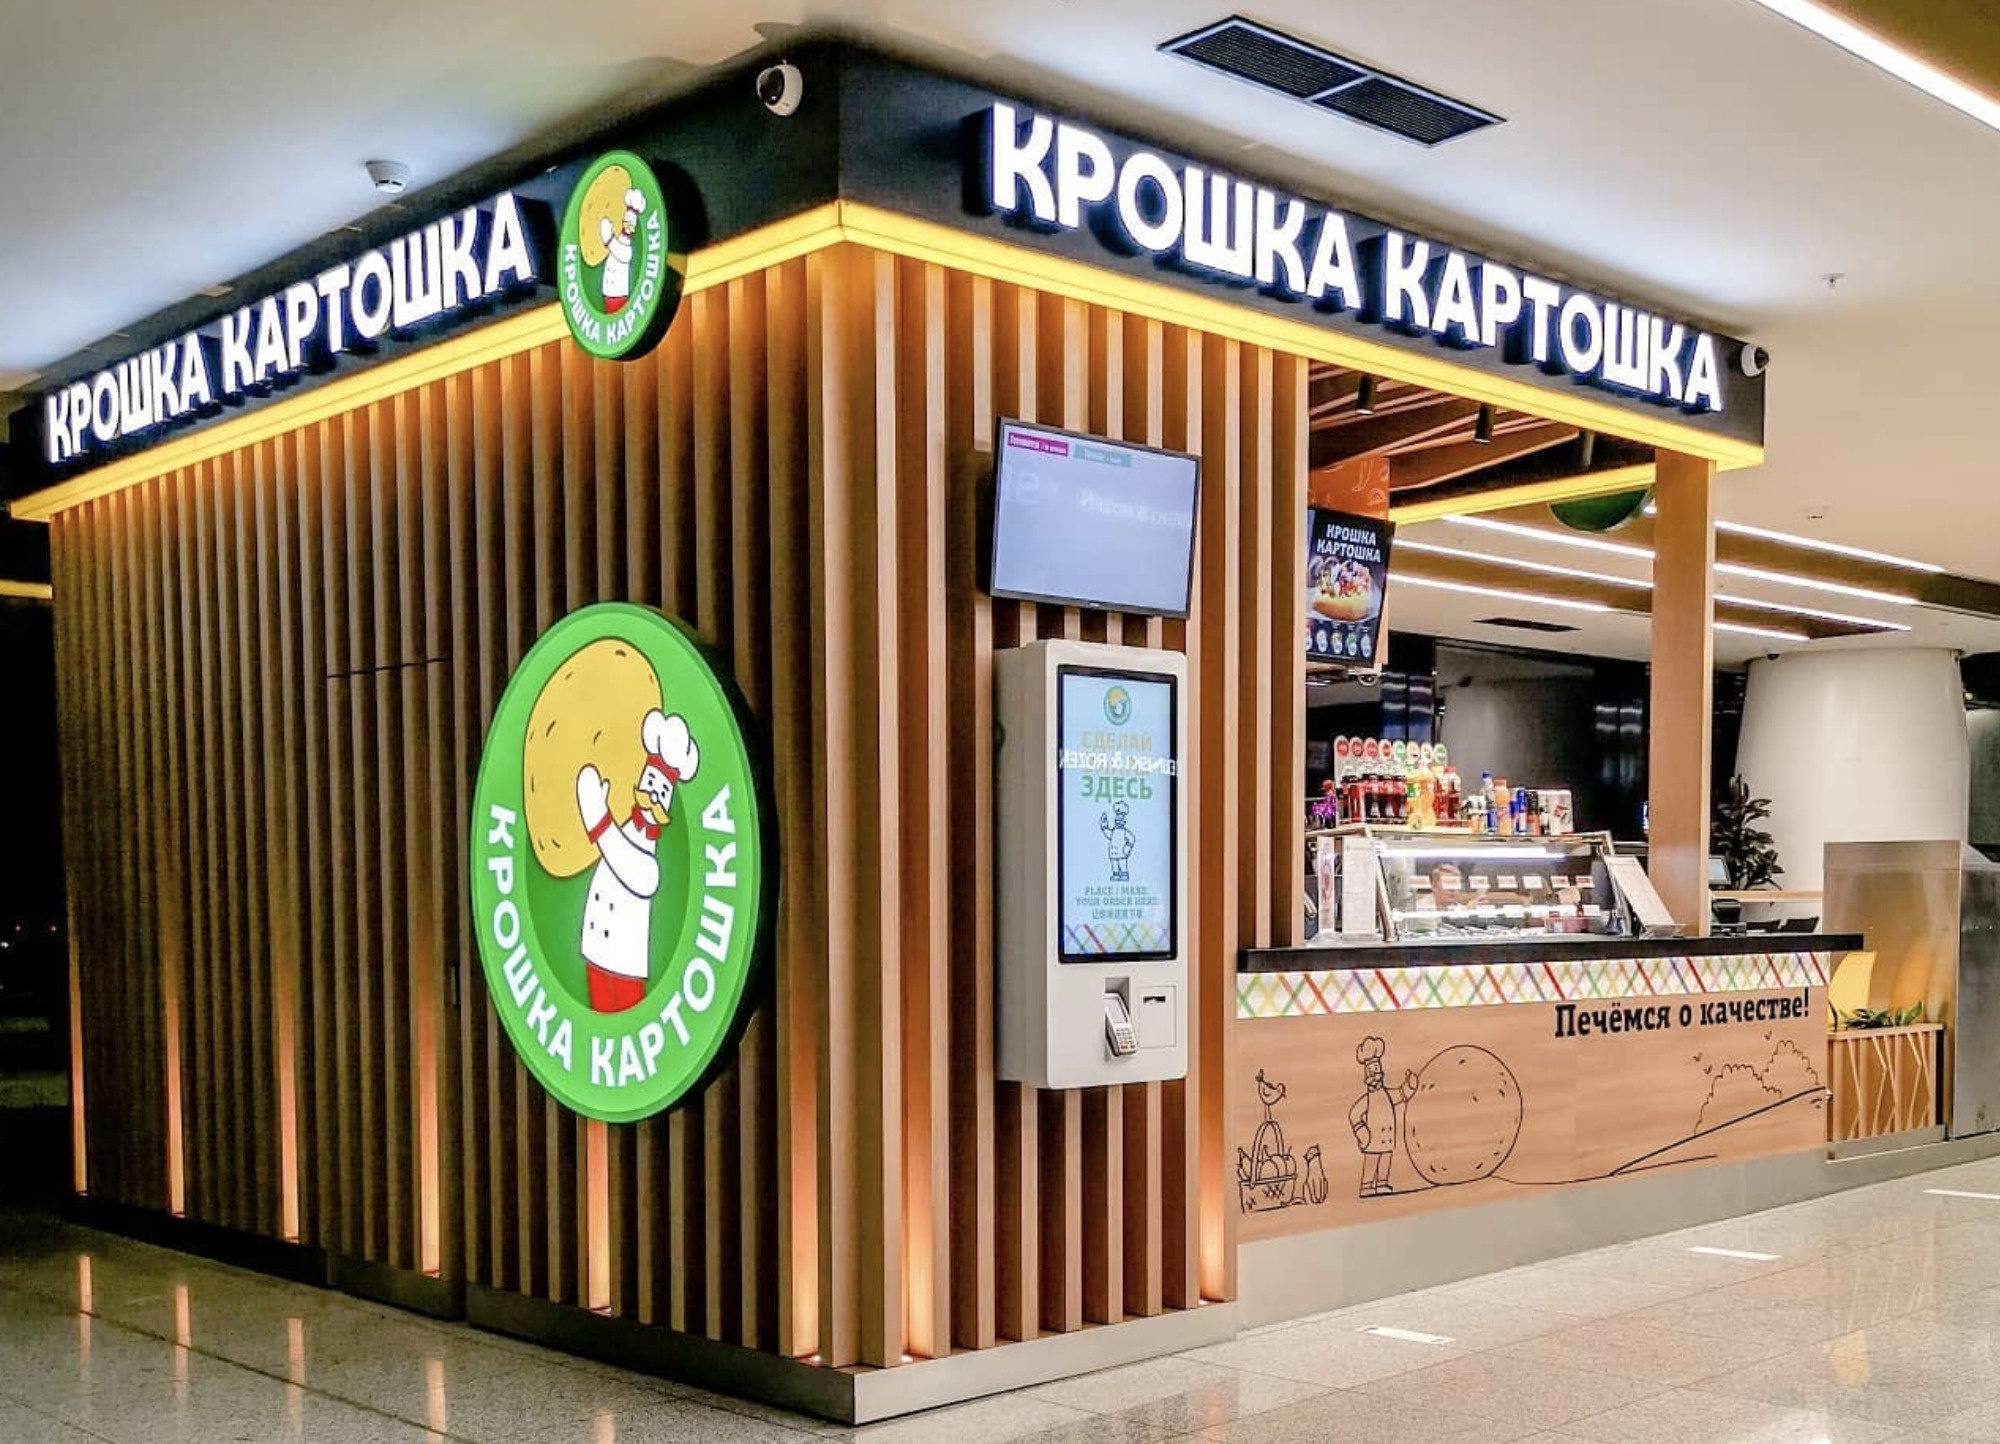 Первая «Крошка-картошка» открылась в Москве в 1998 году. Сейчас в России 190 ресторанов этой сети